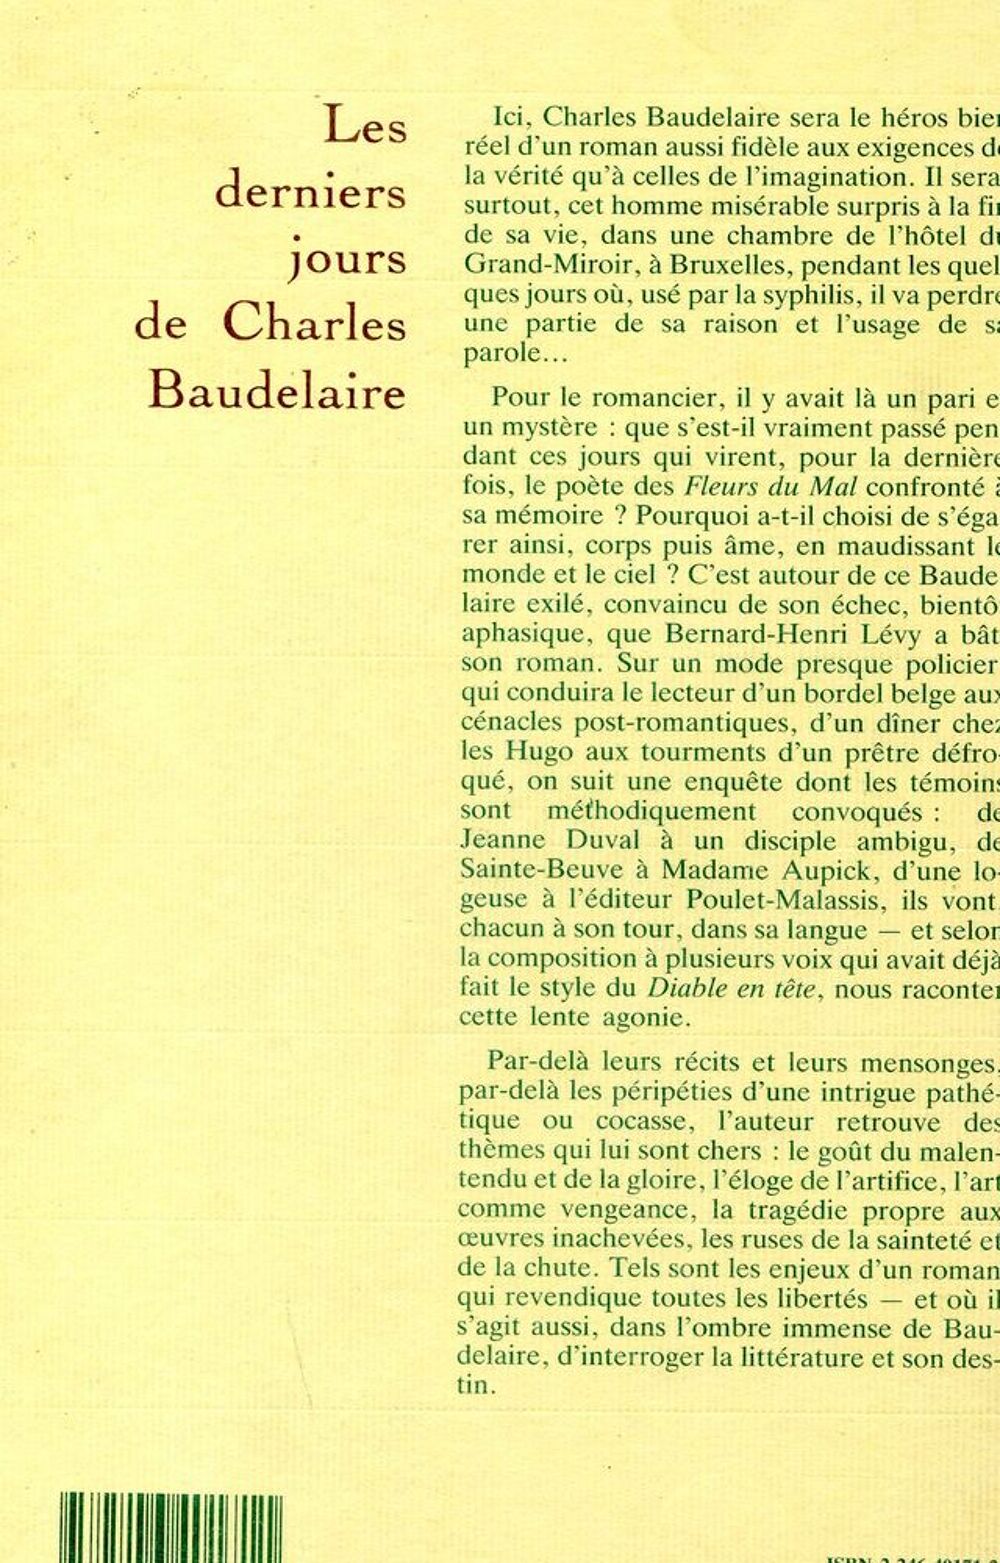 Les derniers jours de Charles Baudelaire - B-H Levy Livres et BD